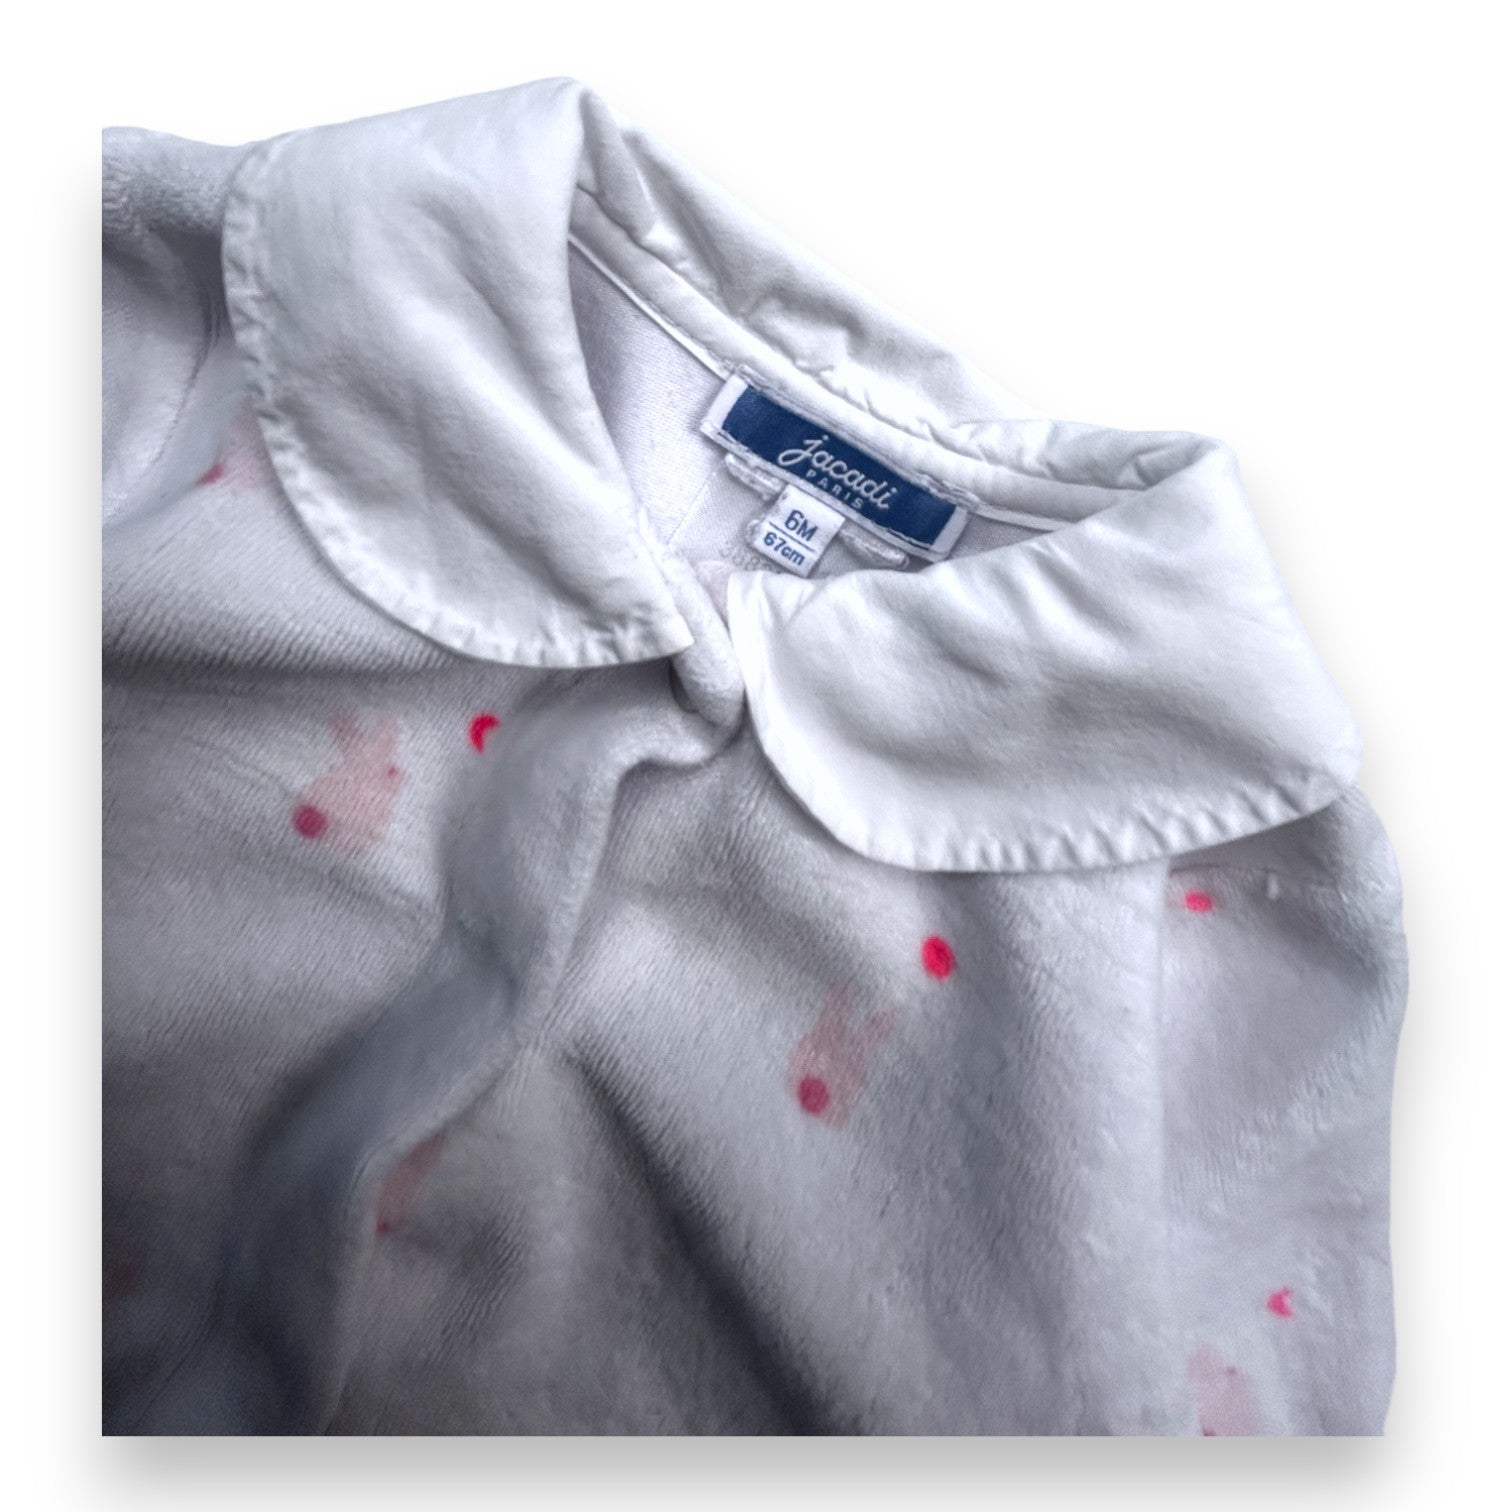 JACADI - Pyjama blanc motif lapin rose - 6 mois